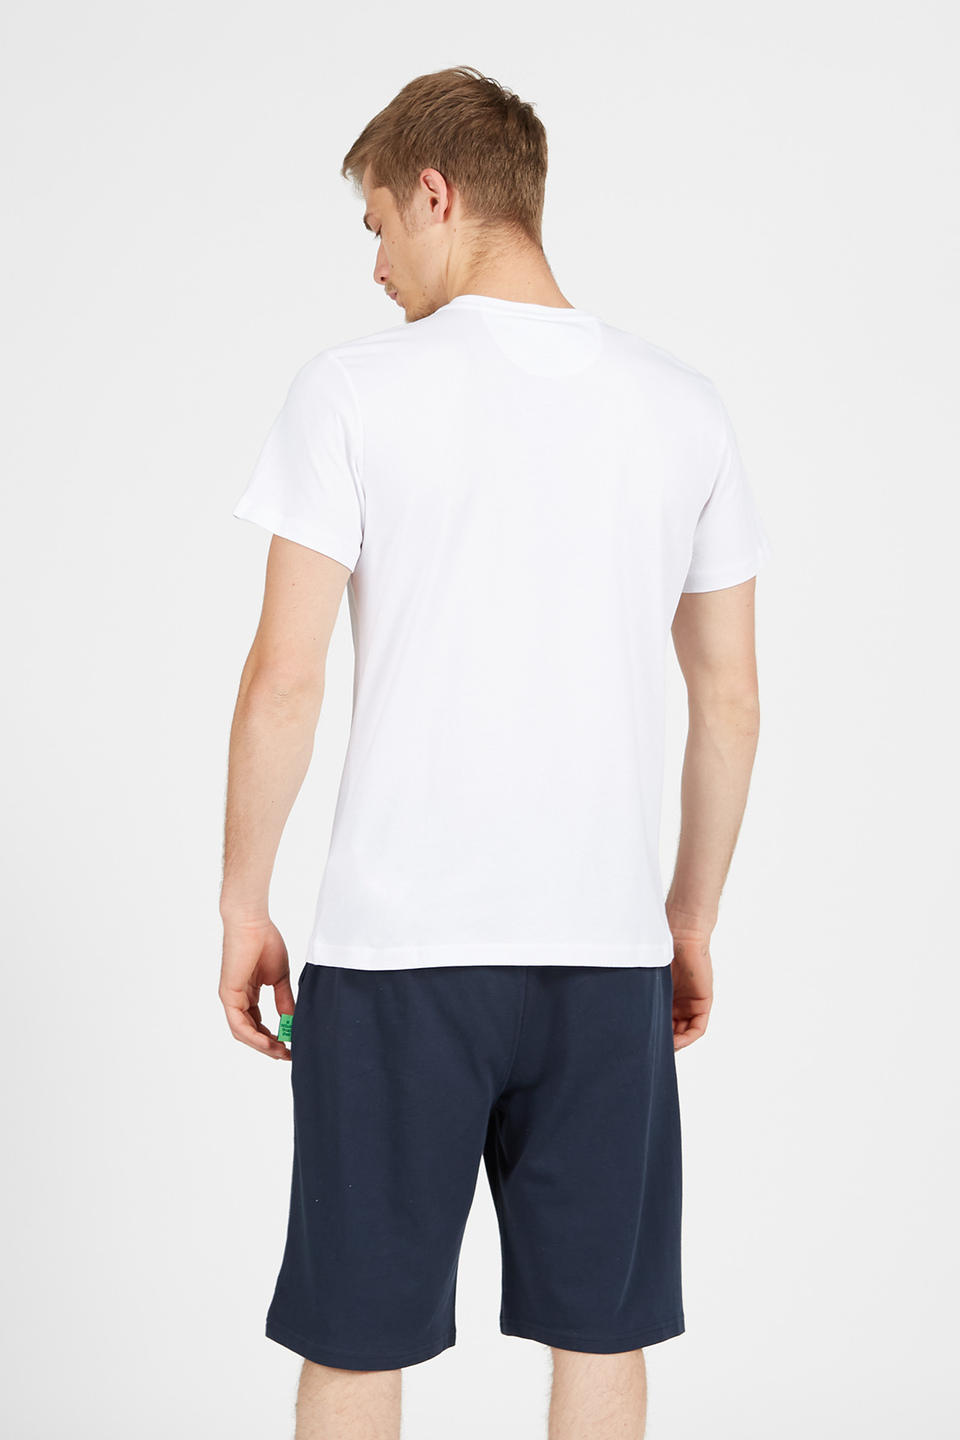 T-shirt da uomo a maniche corte modello girocollo regular fit | La Martina - Official Online Shop